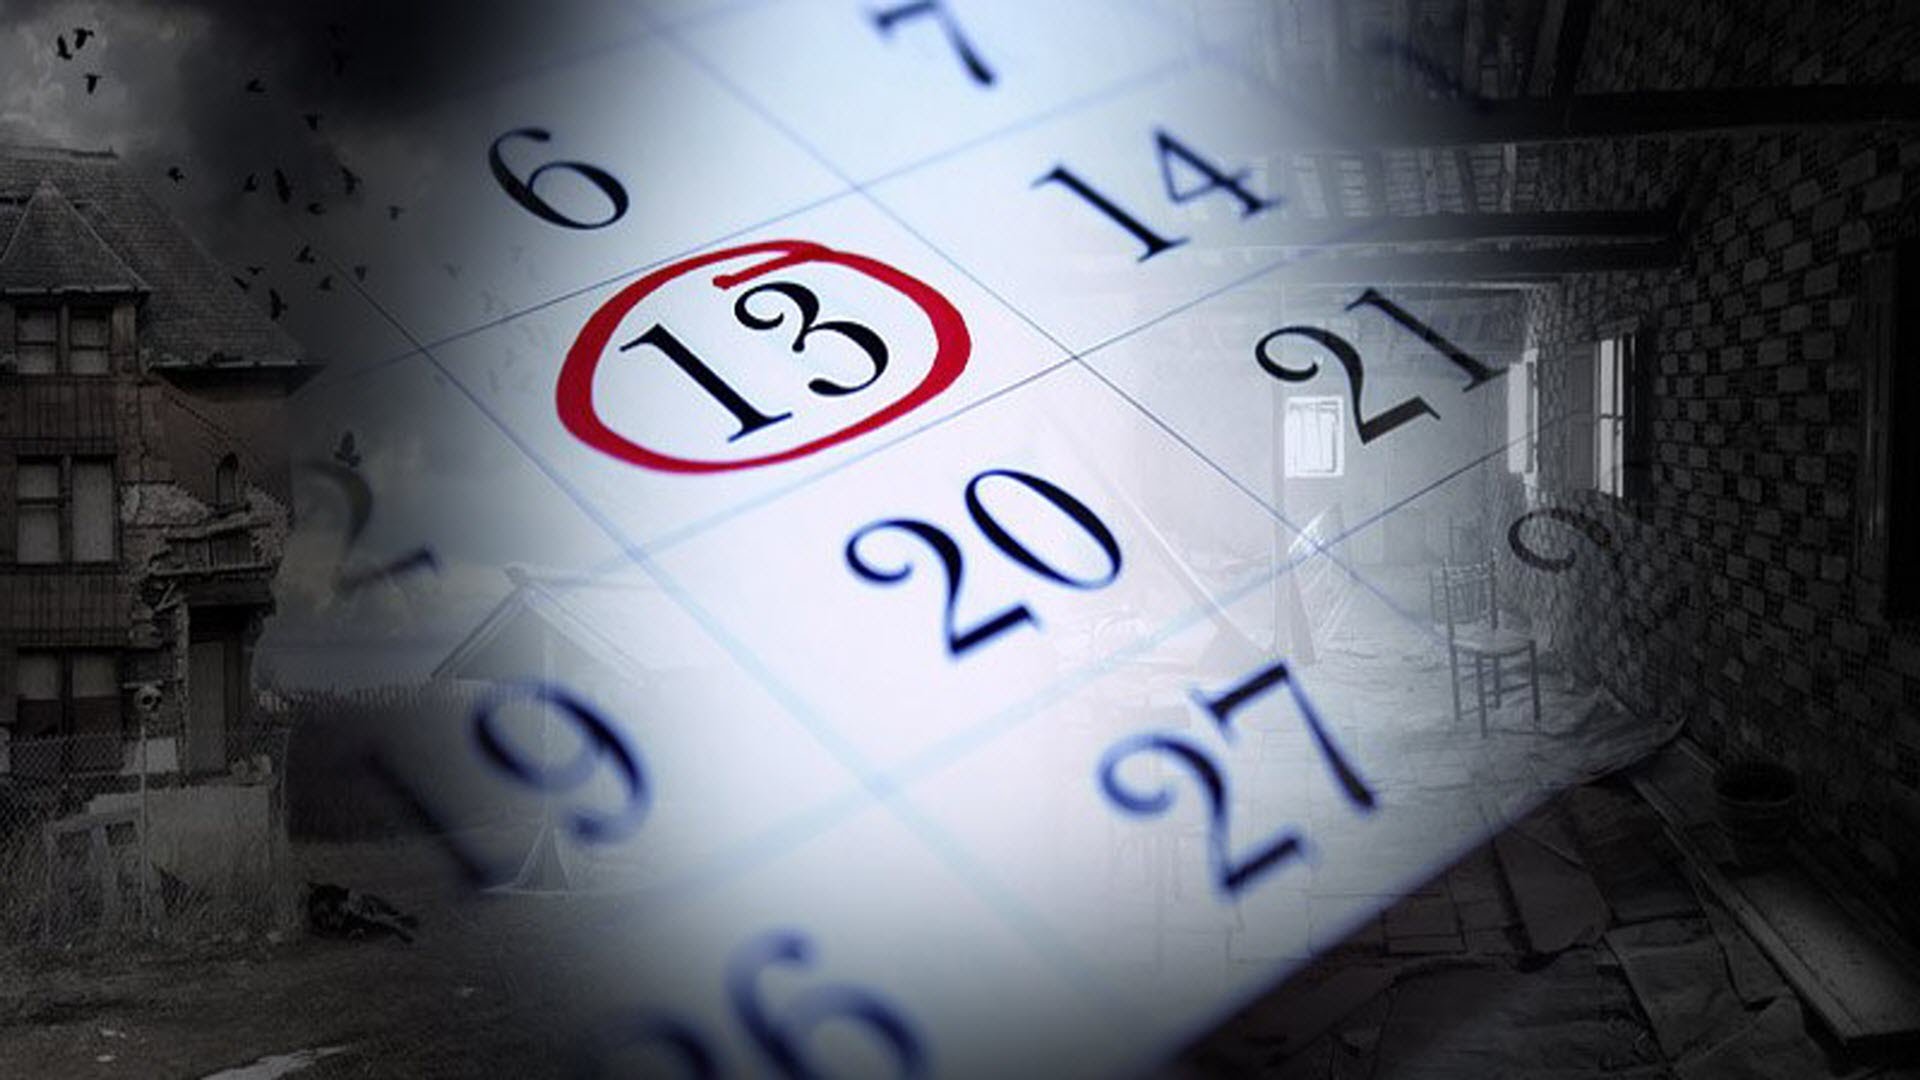 Пятница 13-е: суеверие или действительно несчастливый день?